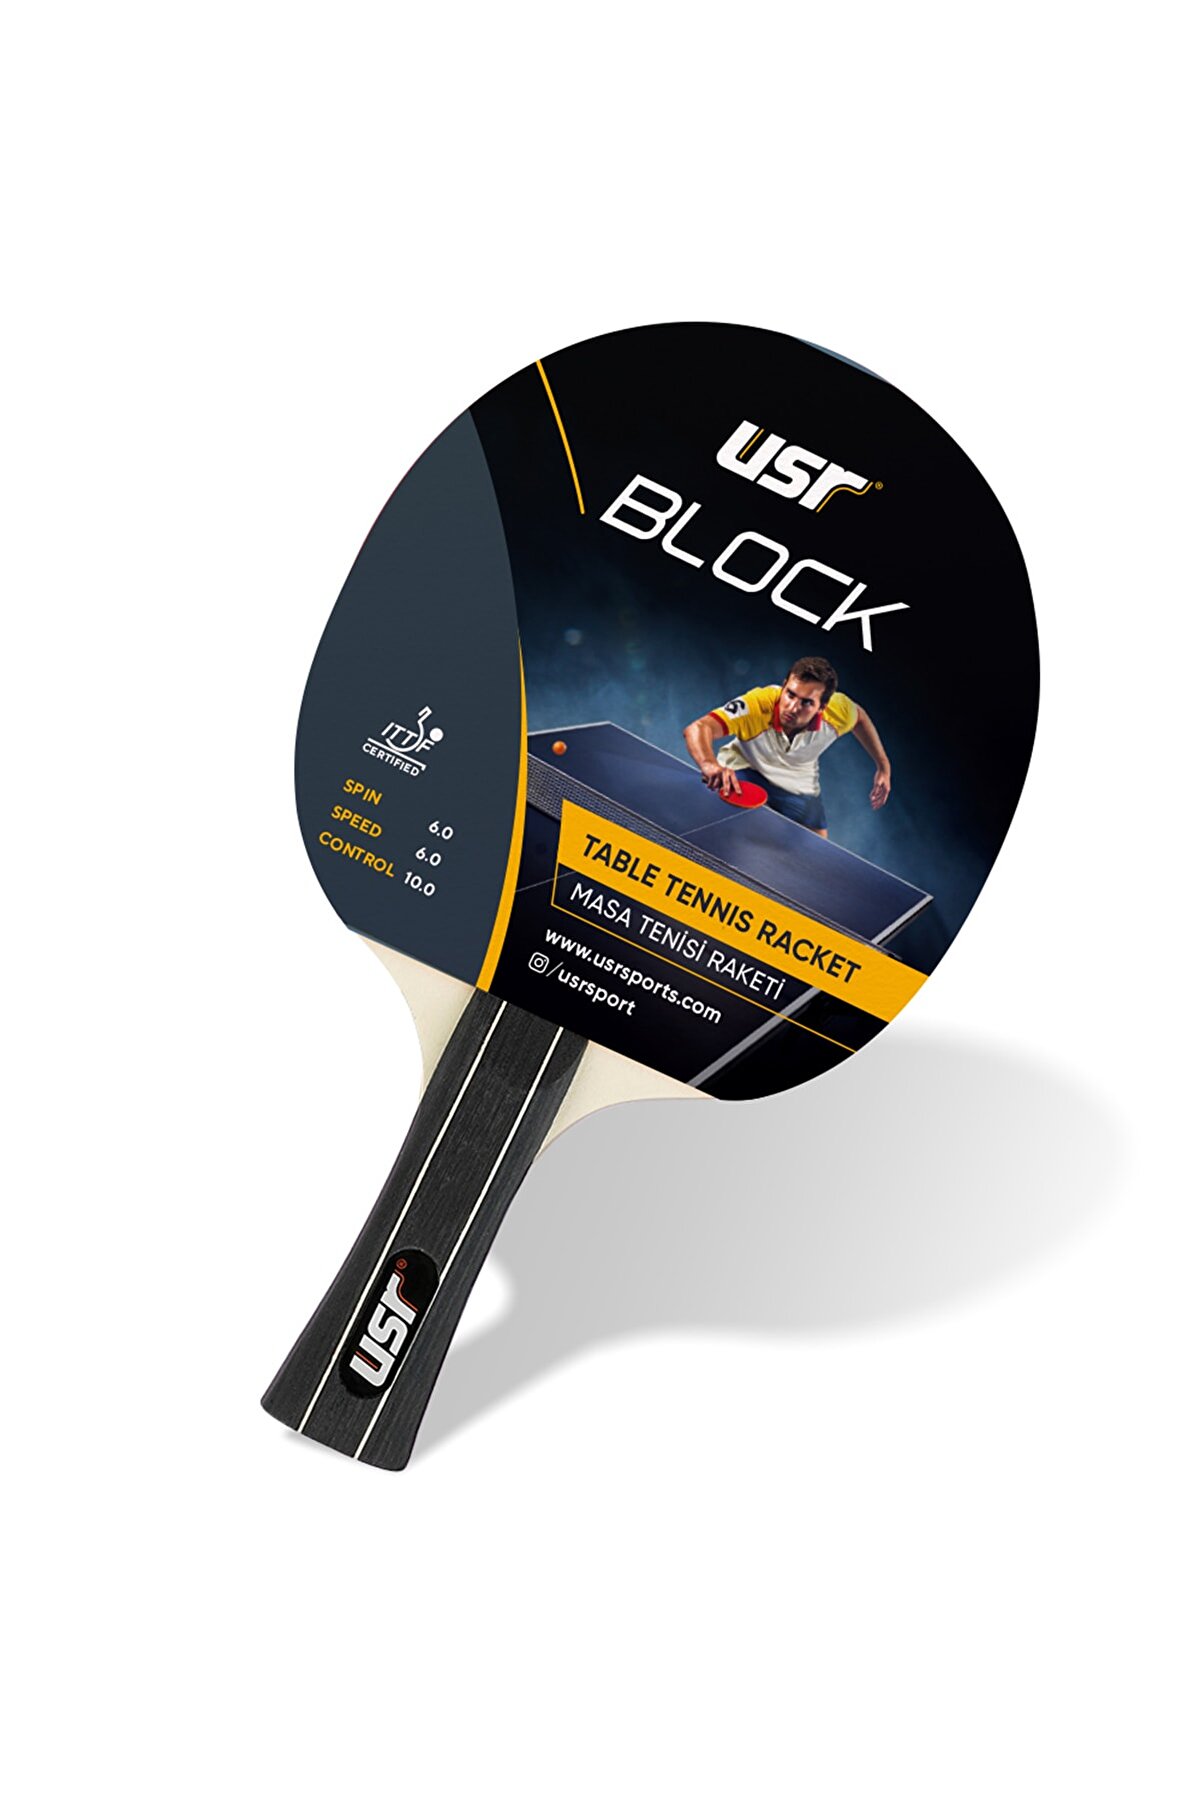 Usr Block ITTF Onaylı Masa Tenisi Raketi